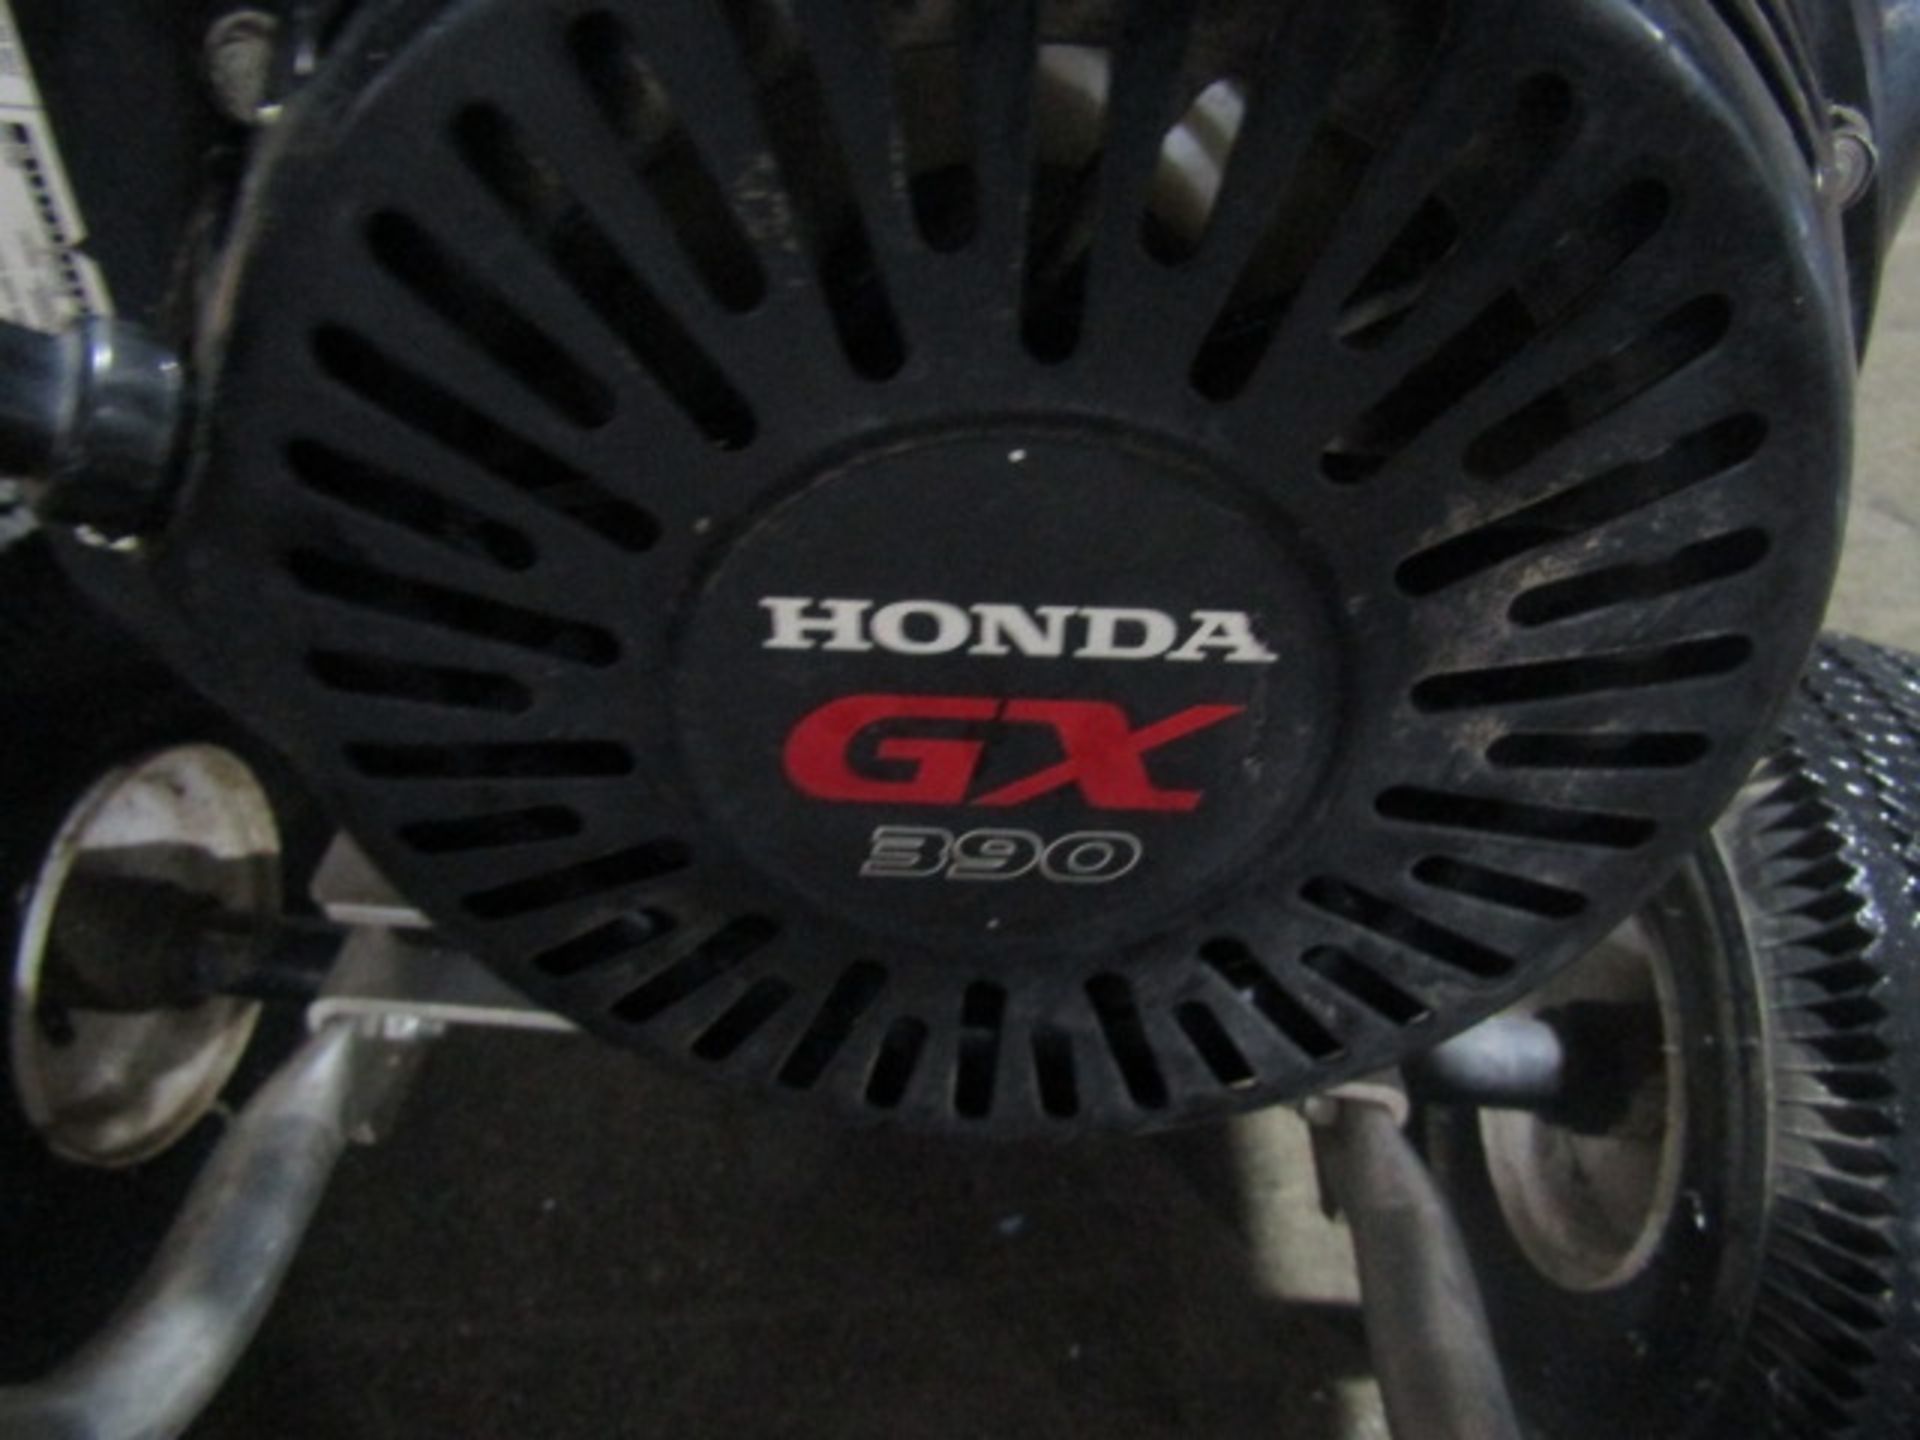 MTM CA-3504-0M4B Pressure Washer, Honda GX390, 3500 PSI, Serial #10536812 - Image 4 of 7